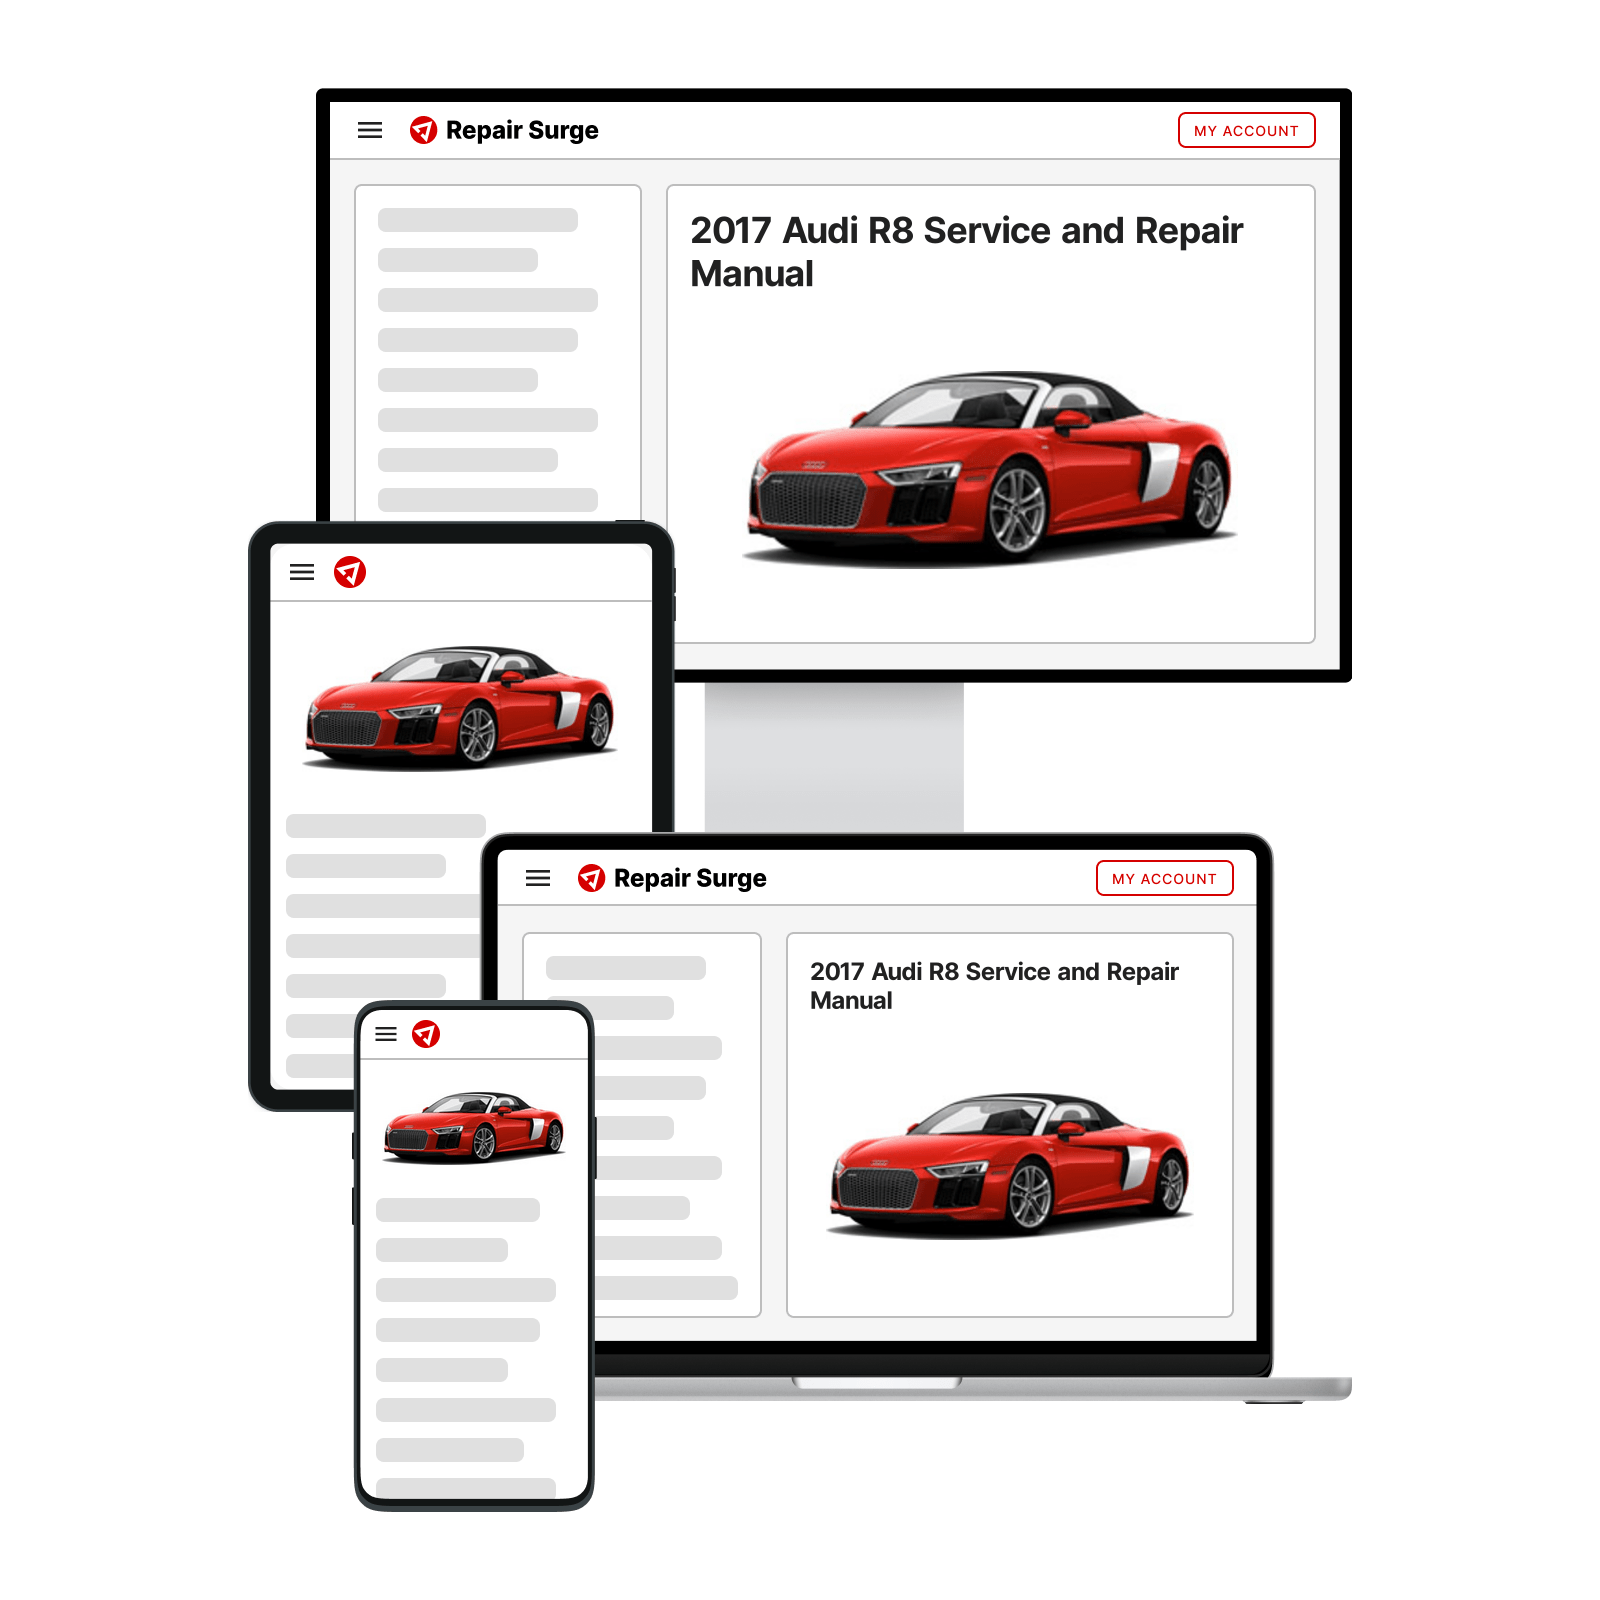 2017 Audi R8 service and repair manual hero image